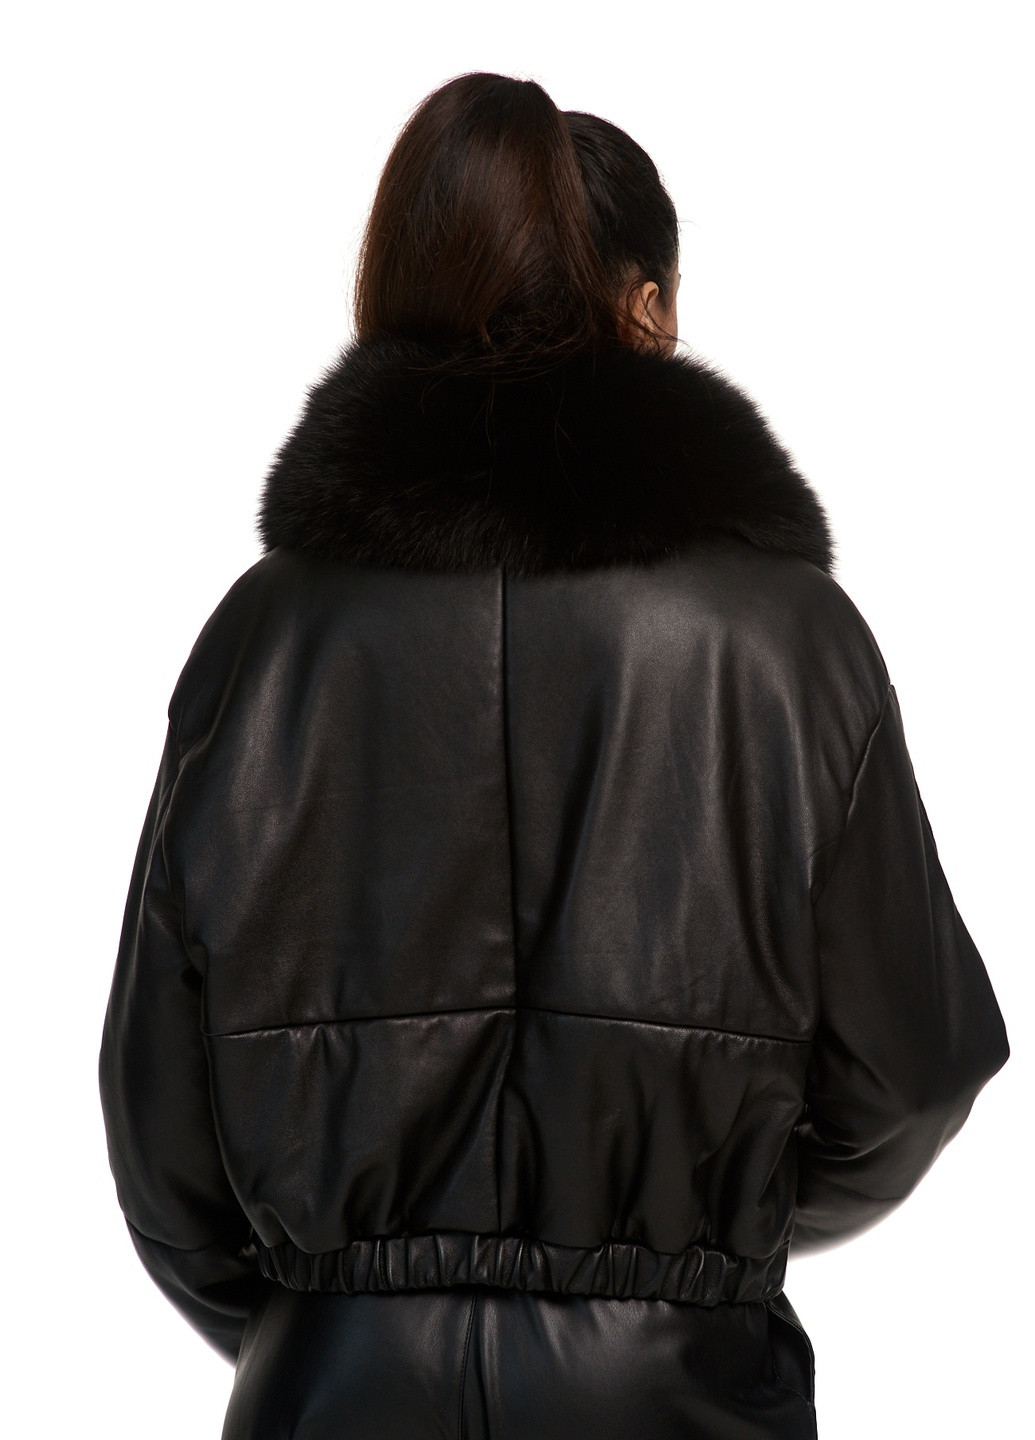 Черная демисезонная пуховик куртка оверсайз oversize утепленная натуральная кожа с натуральным съемным мехом silver fox весна осень зима fb-2 черная Actors